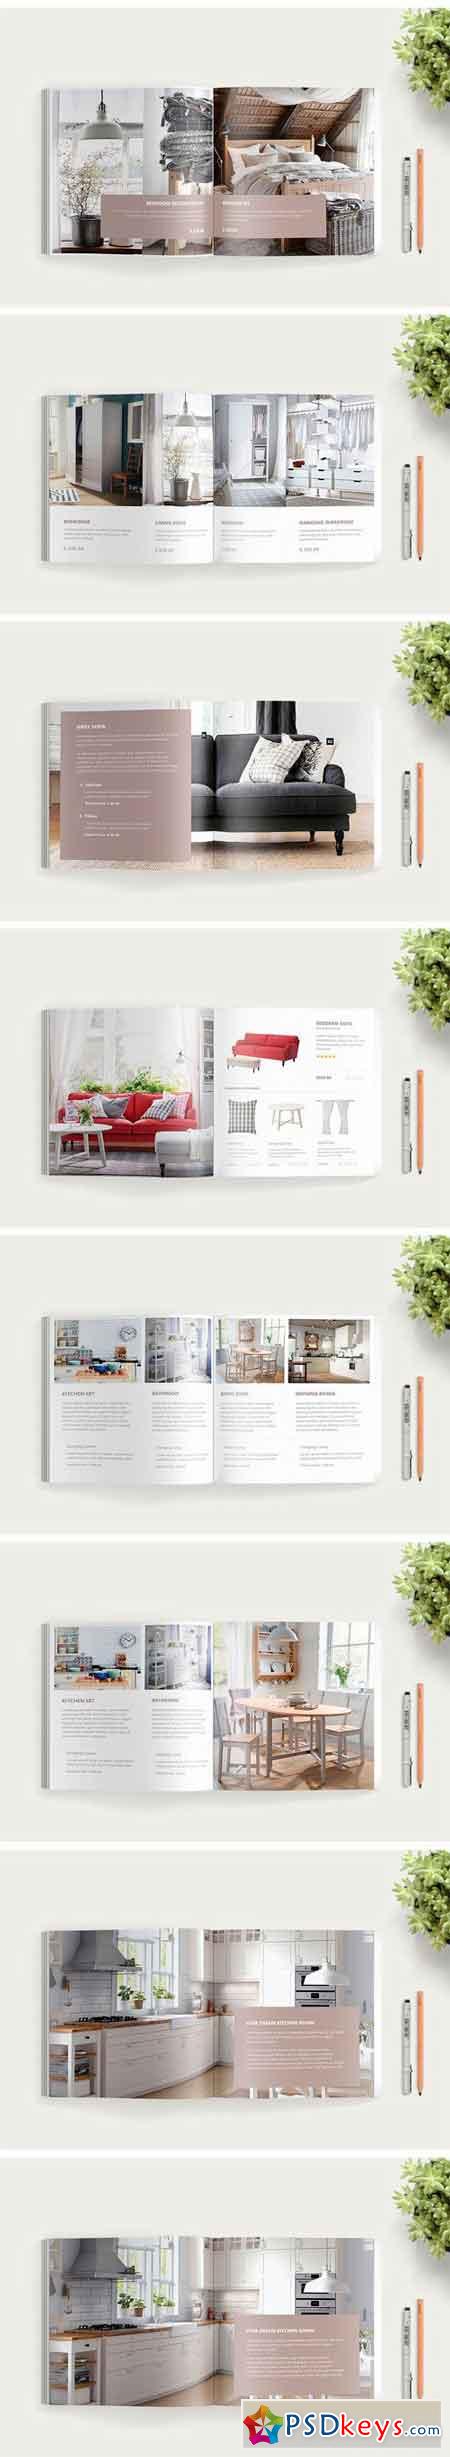 Furniture and Interior Catalog 1406405